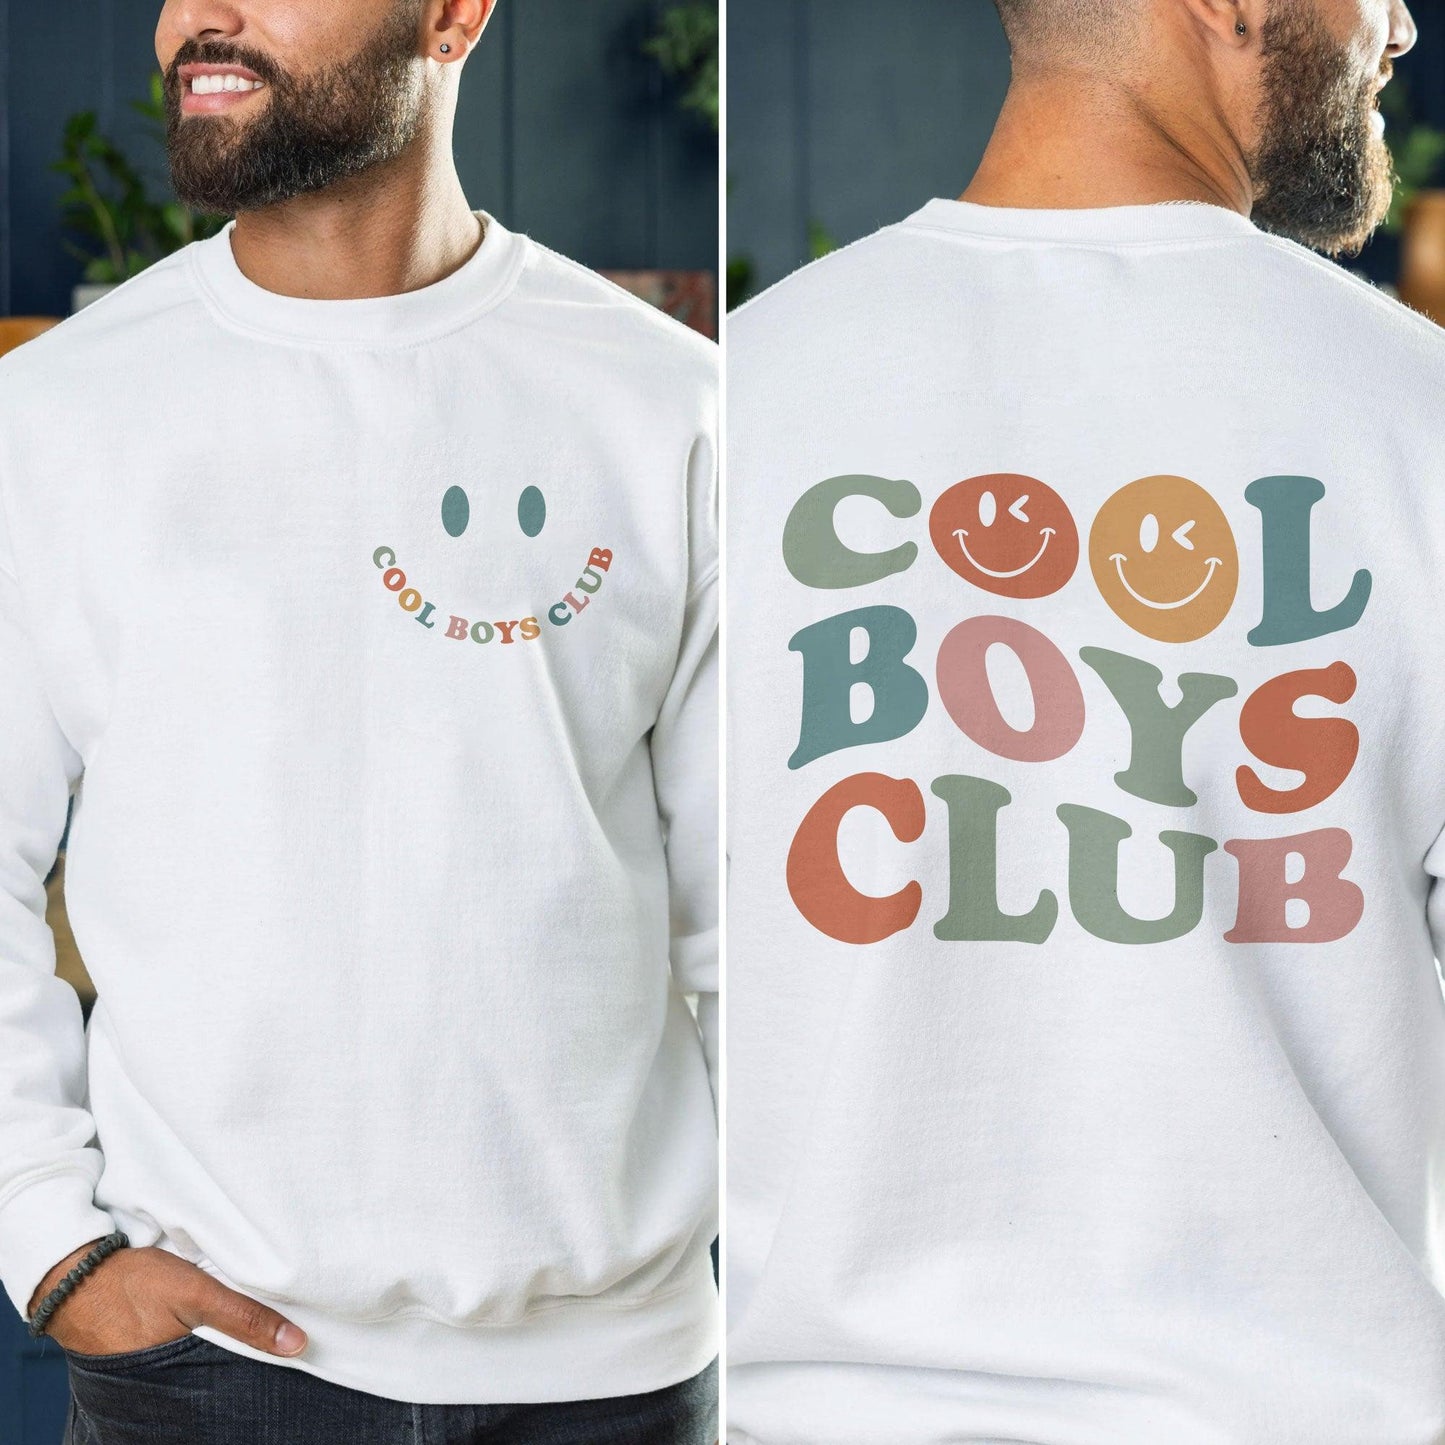 Cooles Boys Club Sweatshirt und Hemden - GiftHaus